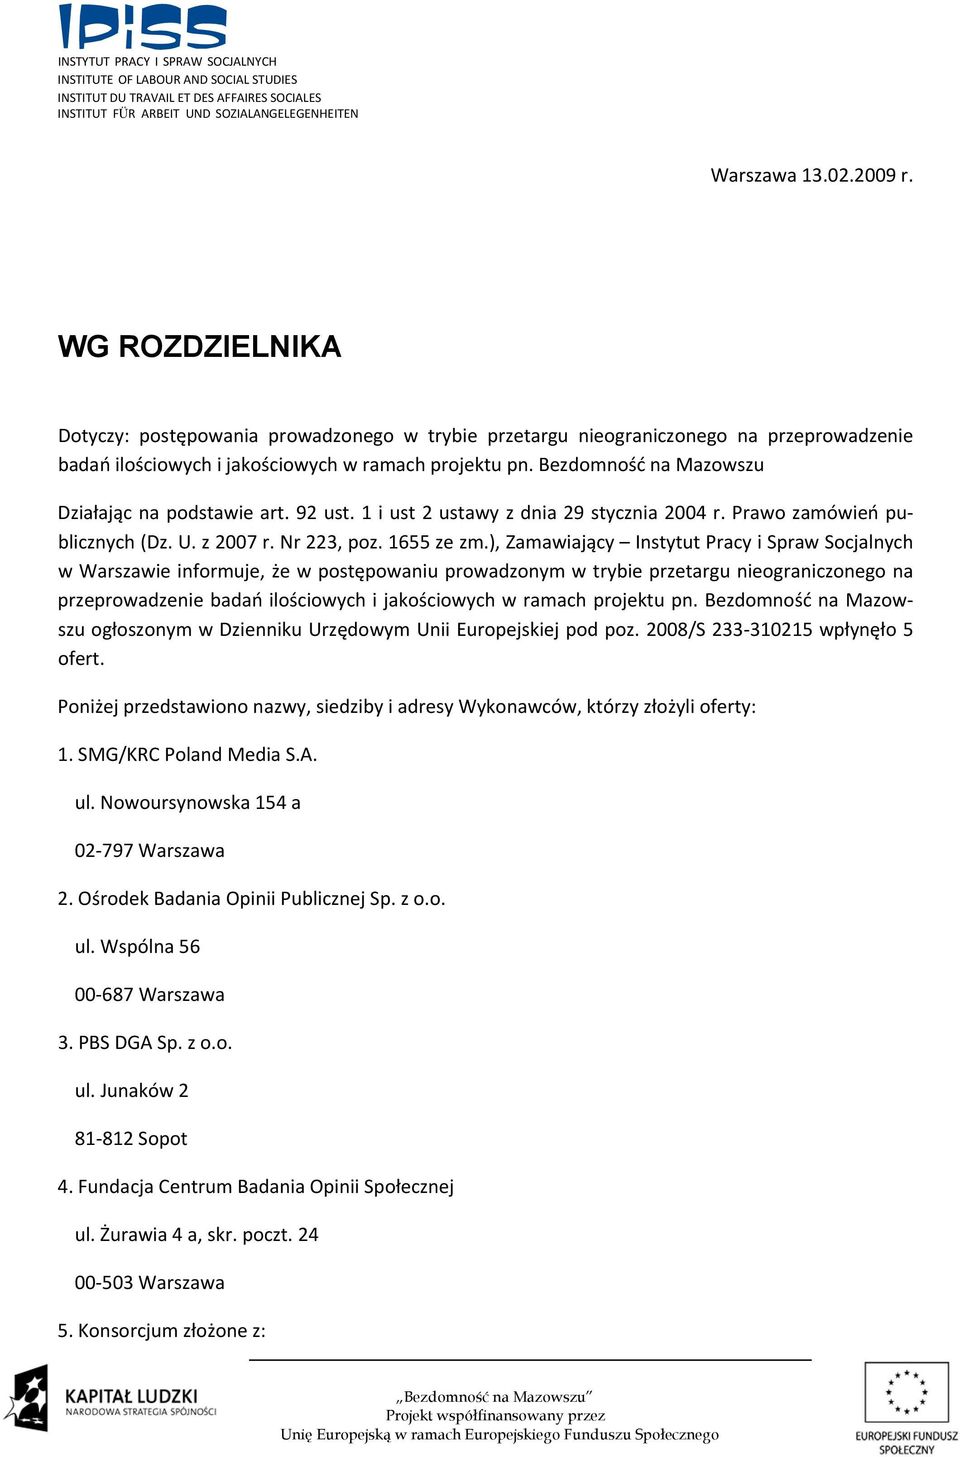 ), Zamawiający Instytut Pracy i Spraw Socjalnych w Warszawie informuje, że w postępowaniu prowadzonym w trybie przetargu nieograniczonego na przeprowadzenie badań ilościowych i jakościowych w ramach